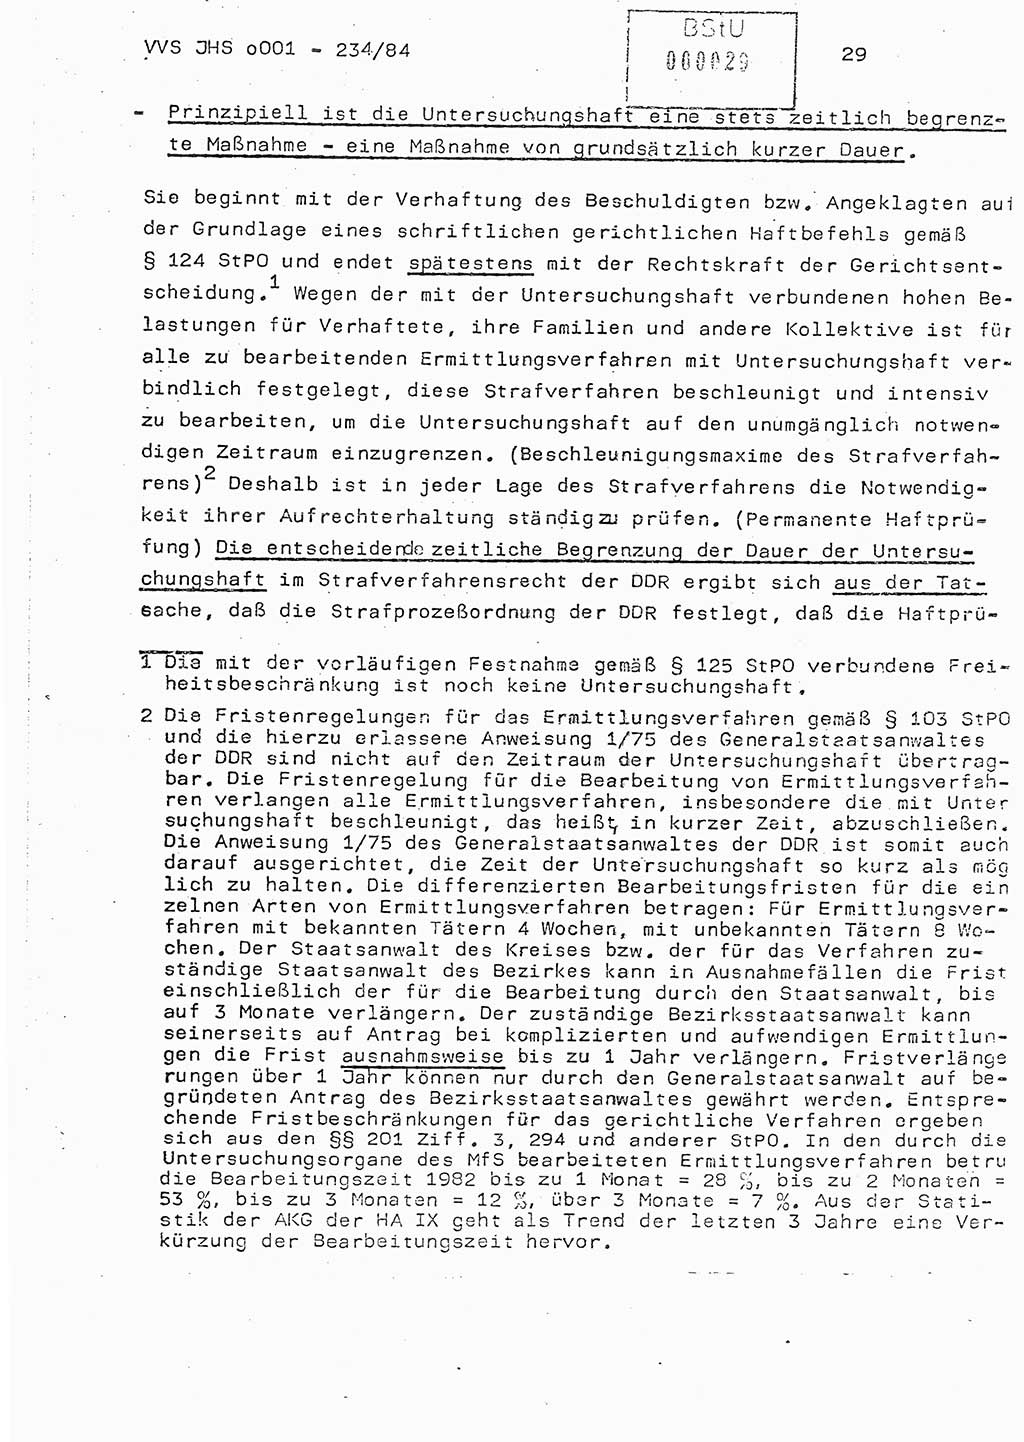 Dissertation Oberst Siegfried Rataizick (Abt. ⅩⅣ), Oberstleutnant Volkmar Heinz (Abt. ⅩⅣ), Oberstleutnant Werner Stein (HA Ⅸ), Hauptmann Heinz Conrad (JHS), Ministerium für Staatssicherheit (MfS) [Deutsche Demokratische Republik (DDR)], Juristische Hochschule (JHS), Vertrauliche Verschlußsache (VVS) o001-234/84, Potsdam 1984, Seite 29 (Diss. MfS DDR JHS VVS o001-234/84 1984, S. 29)